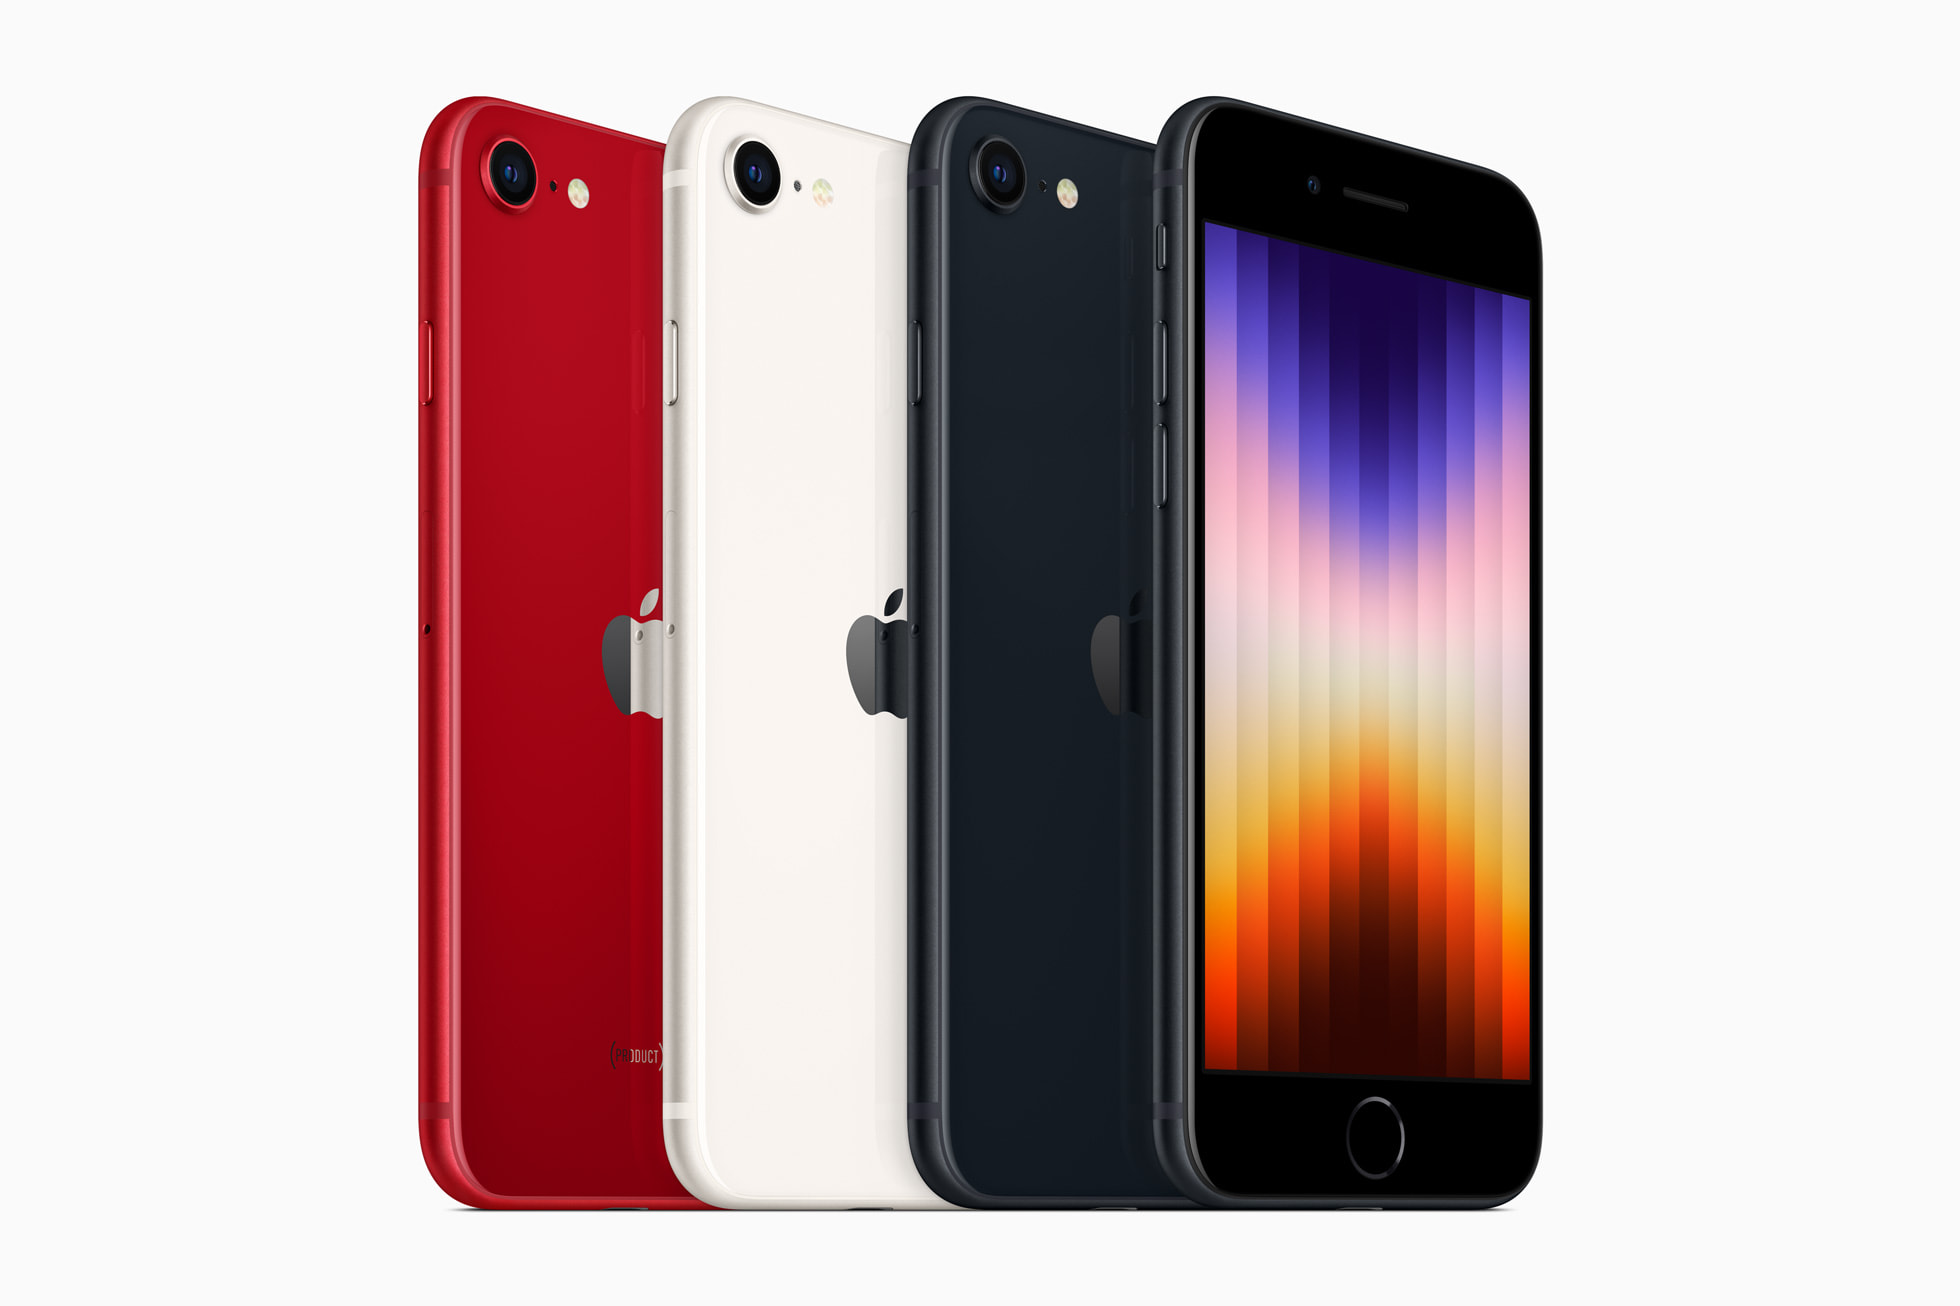 IPhone SE baru dalam kemasan merah (produk) merah, cahaya bintang dan tengah malam